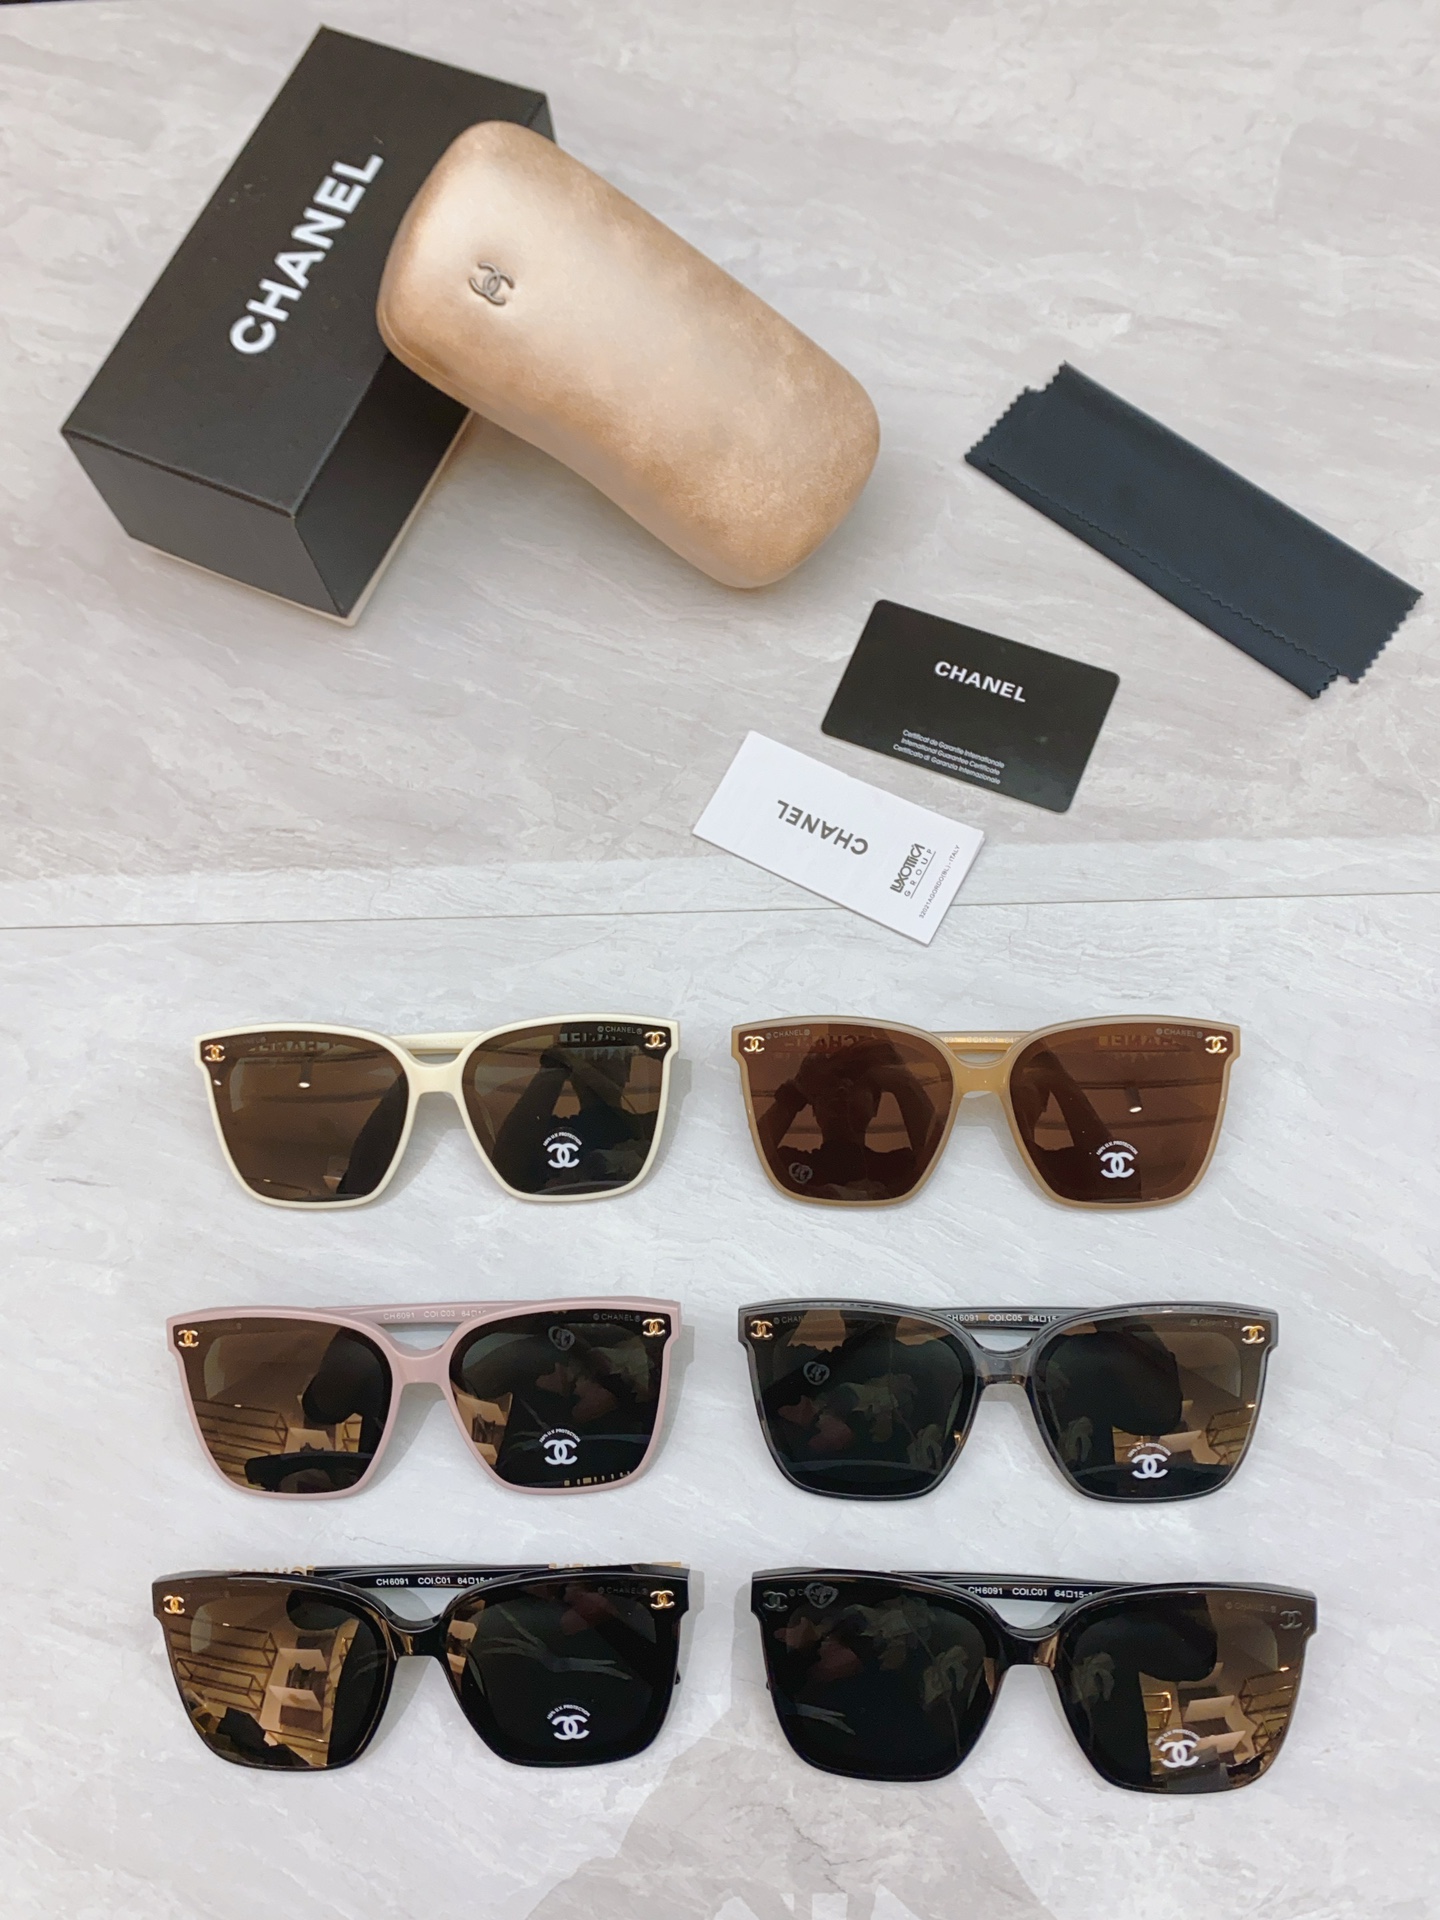 Chanel Sunglasses Buy Cheap Replica